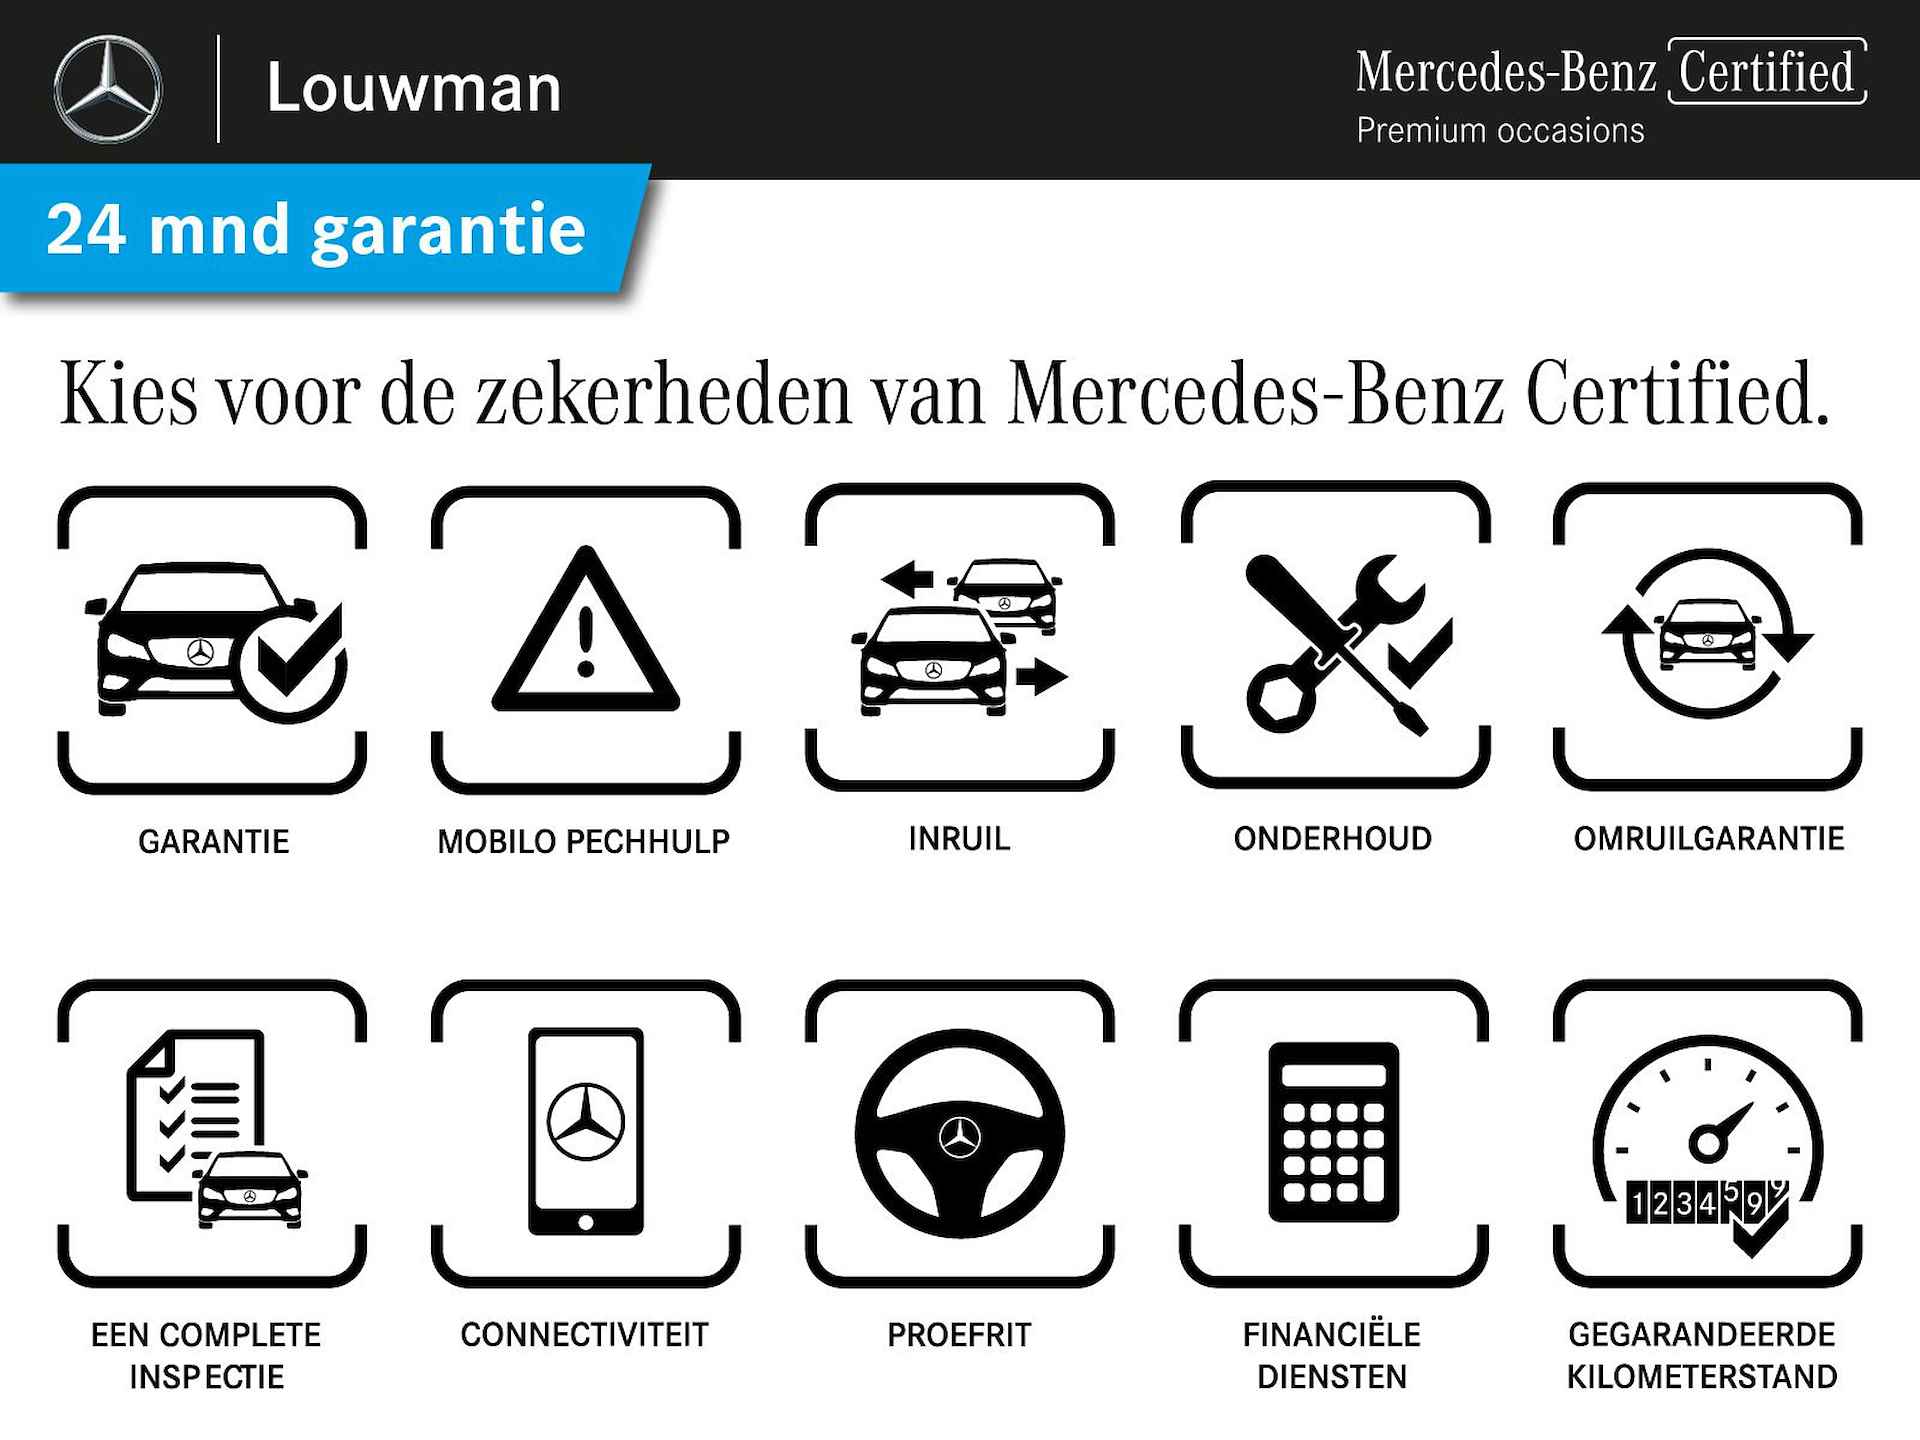 Mercedes-Benz GLE 450 4MATIC AMG Line Premium | Panoramadak | Luchtvering | Burmester | Navigatie | MBUX wide screen | Alarm klasse 3 | Parking support | inclusief 24 maanden MB Certified garantie voor europa - 39/39